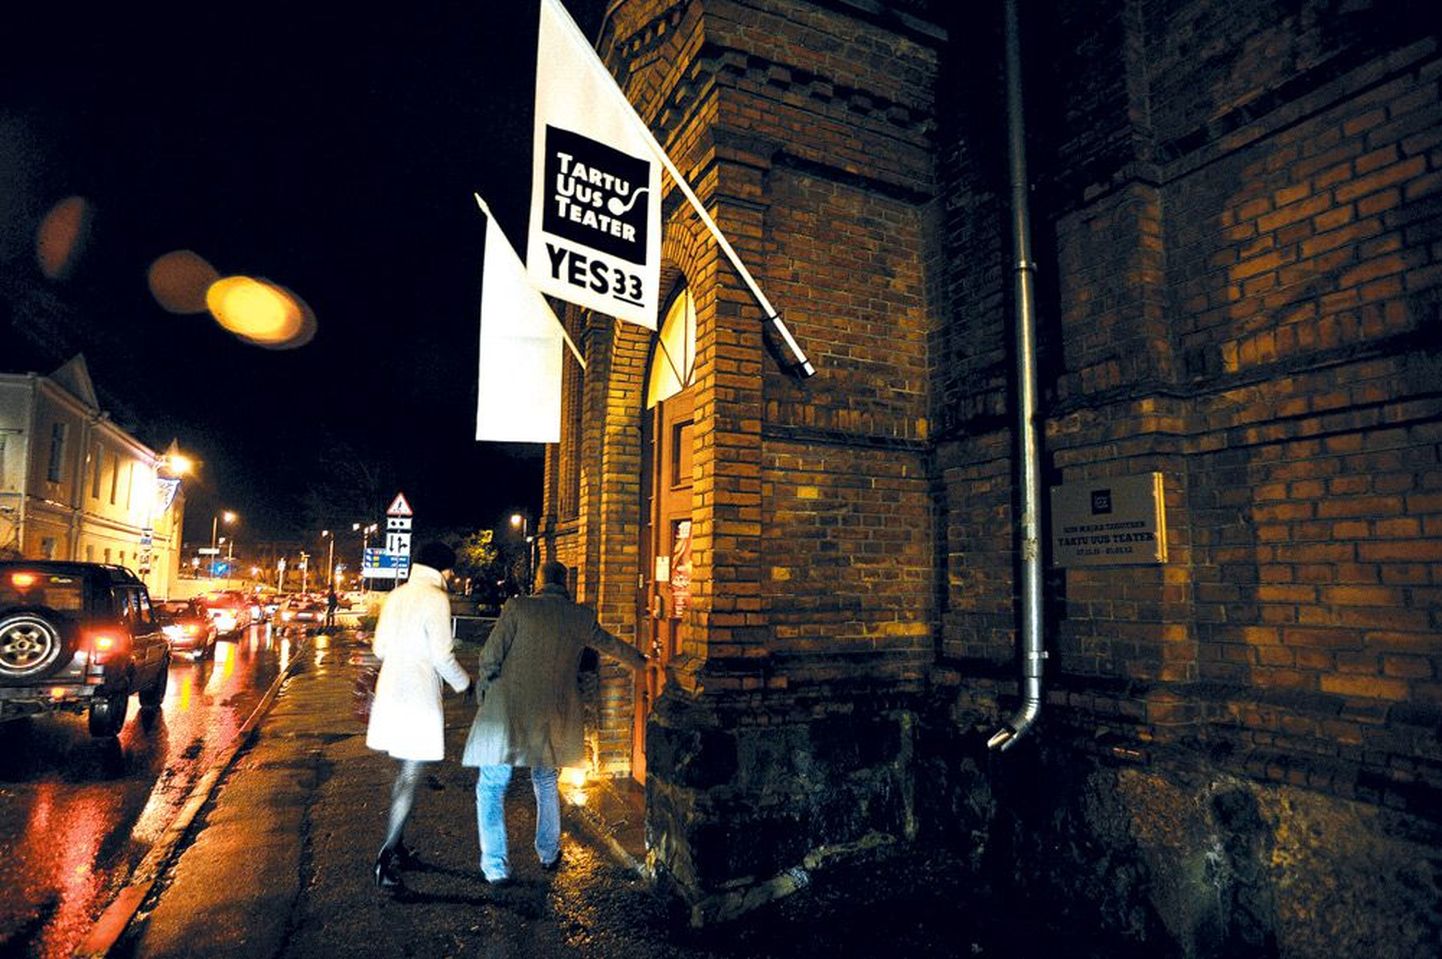 Vana võimlat kaunistavad Yes33 lipud ja metallist tahvel, millel on tekst «Siin majas tegutseb Tartu Uus Teater 27.11.11 – 01.01.12».